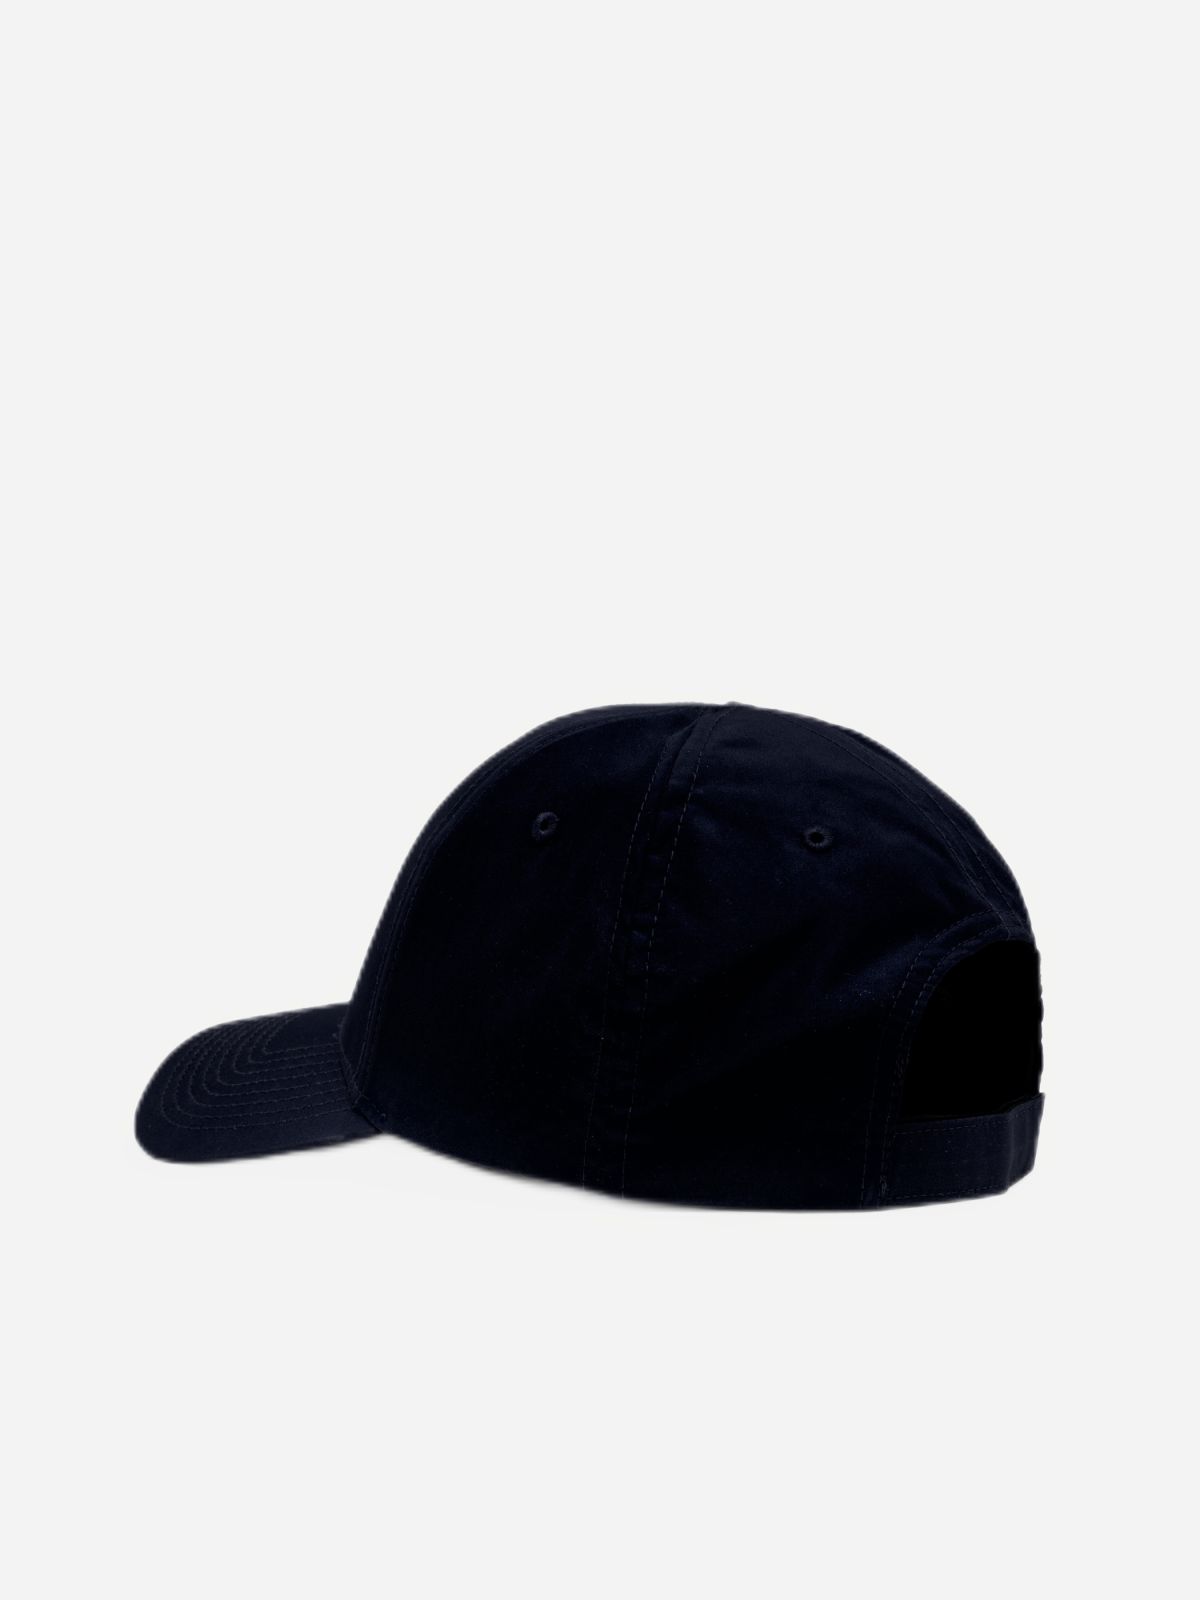  כובע מצחייה עם לוגו / נשים של AUTRY